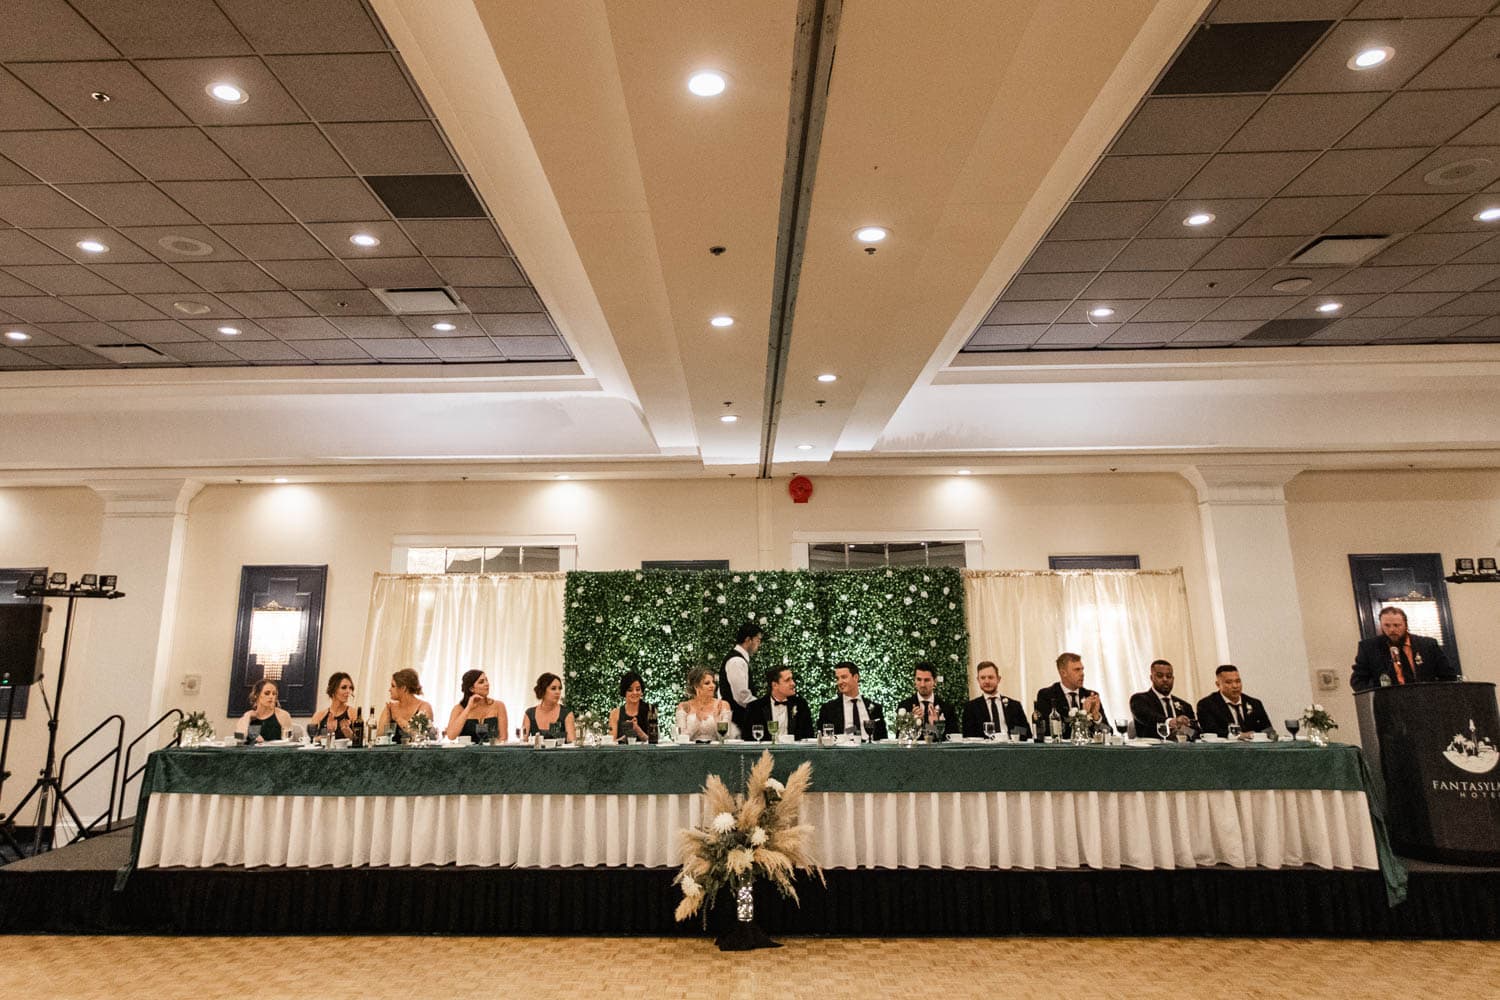 Edmonton Fantasyland Hotel Wedding Reception head table